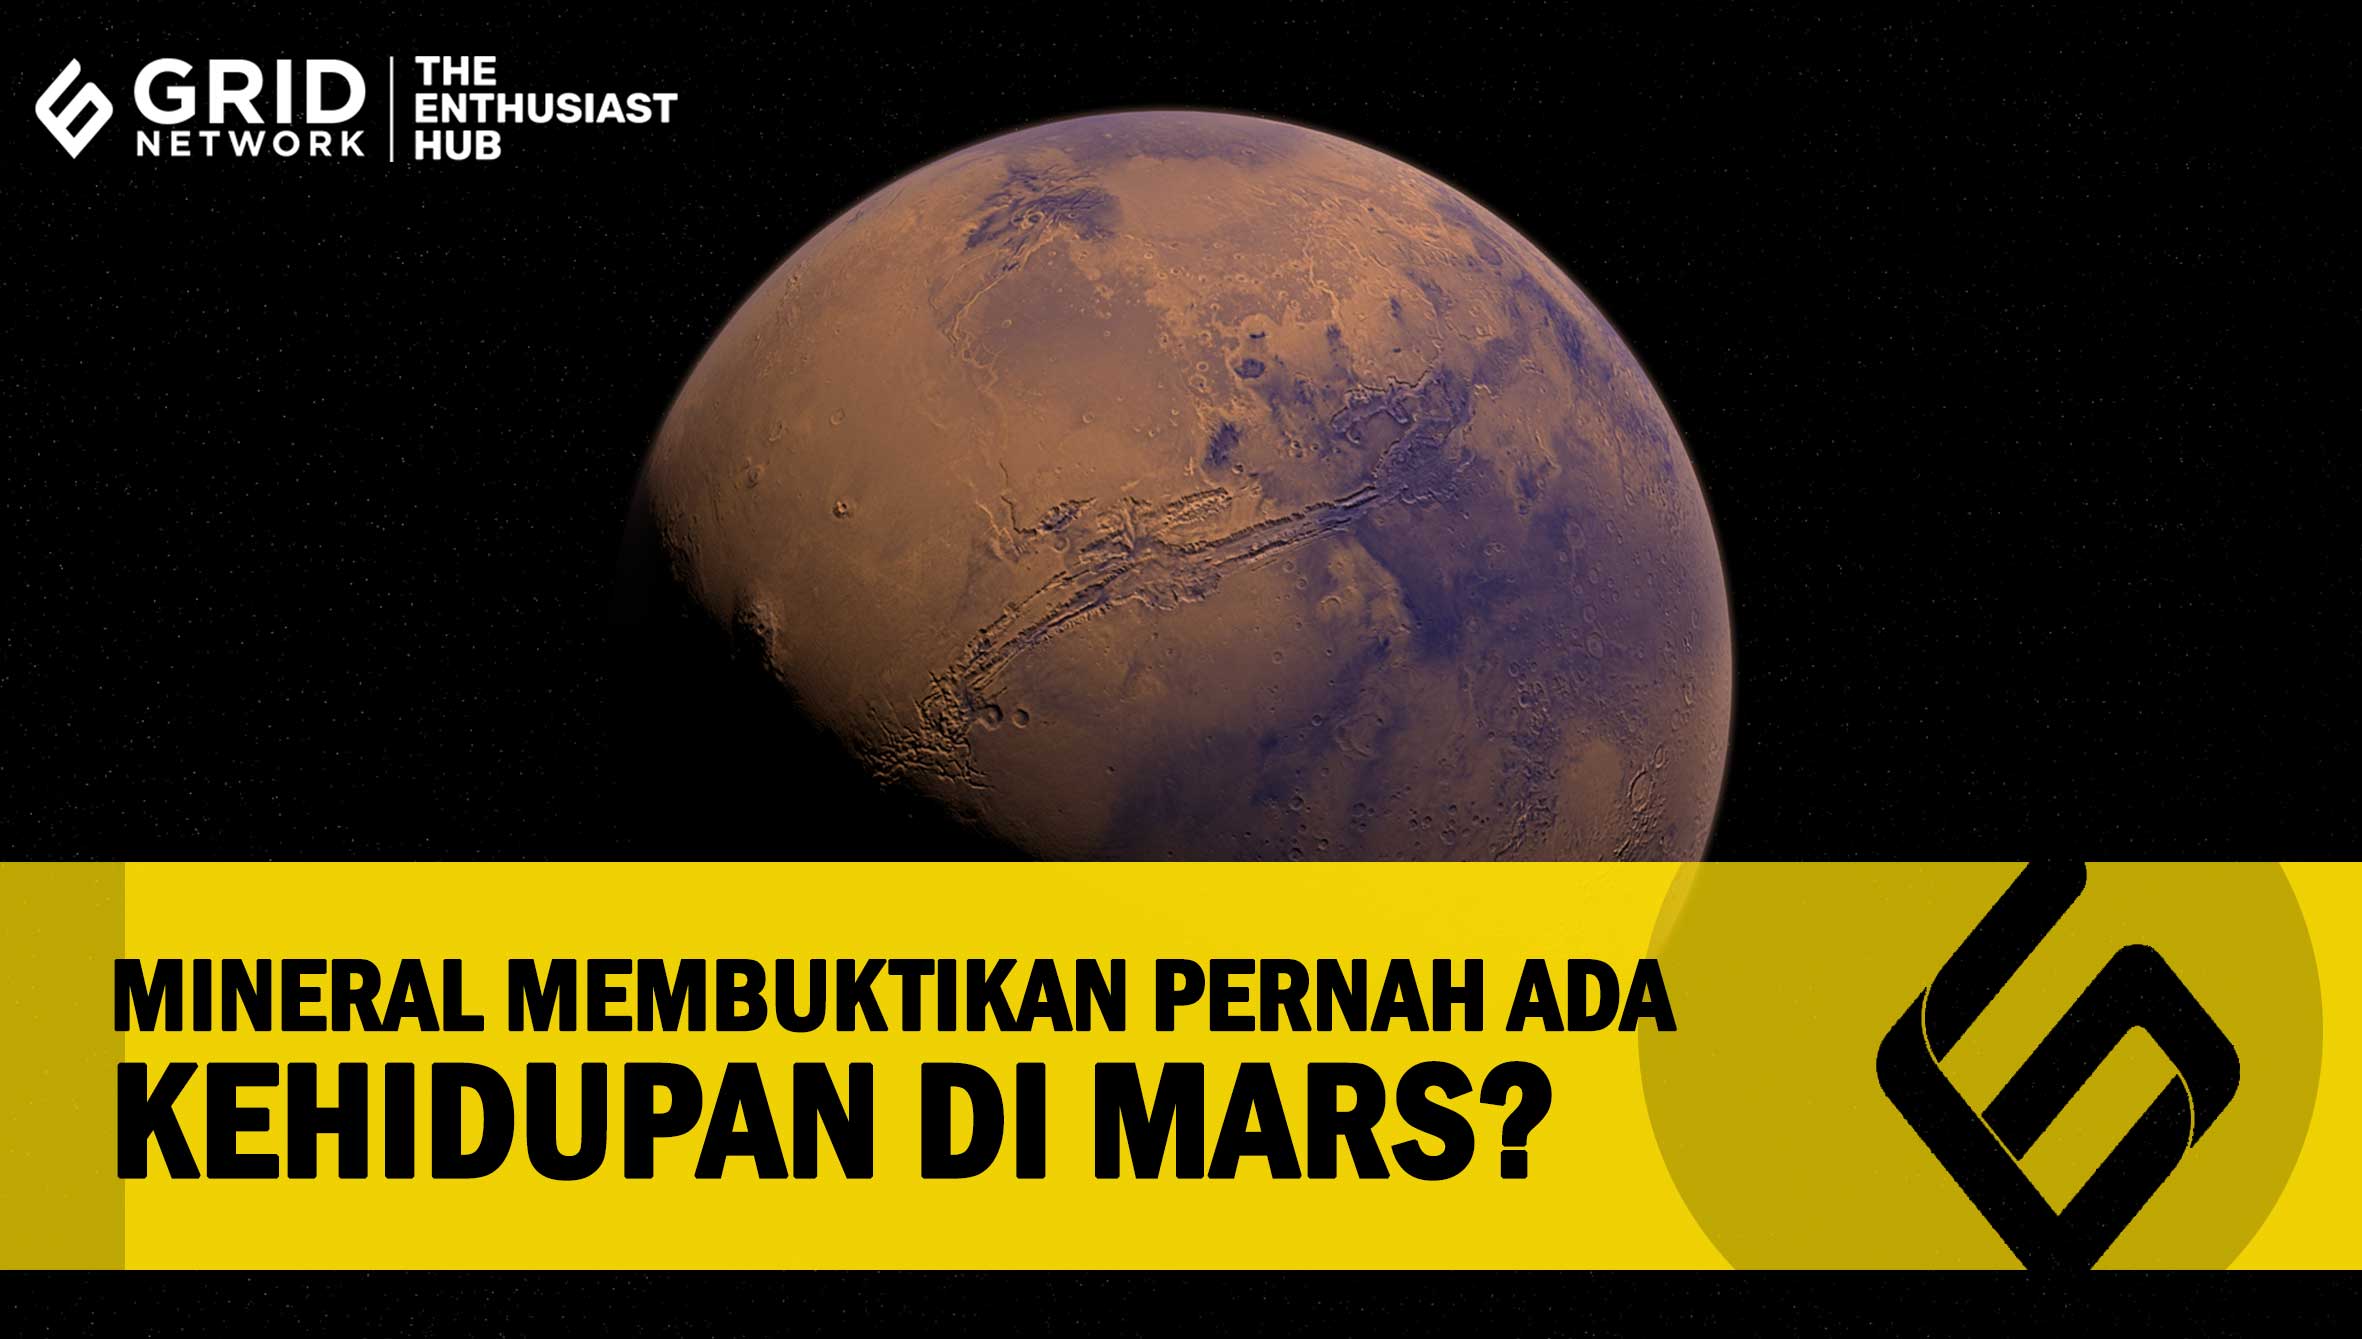 Benarkah Temuan Mineral Membuktikan Pernah Ada Kehidupan di Mars?